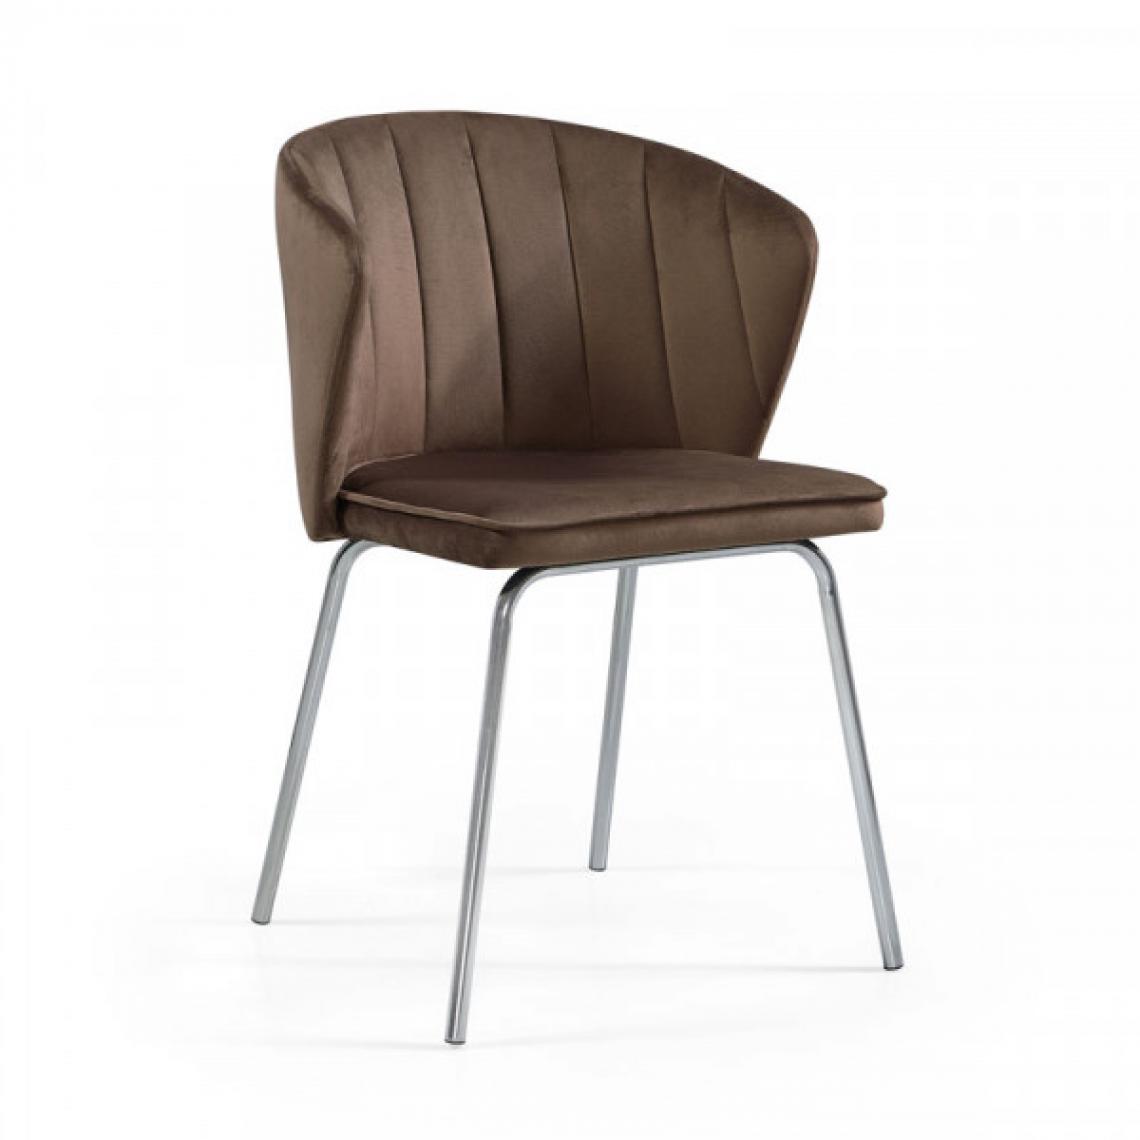 Dansmamaison - Chaise en tissu velours Marron - EDEN - L 56 x l 50 x H 78 cm - Chaises